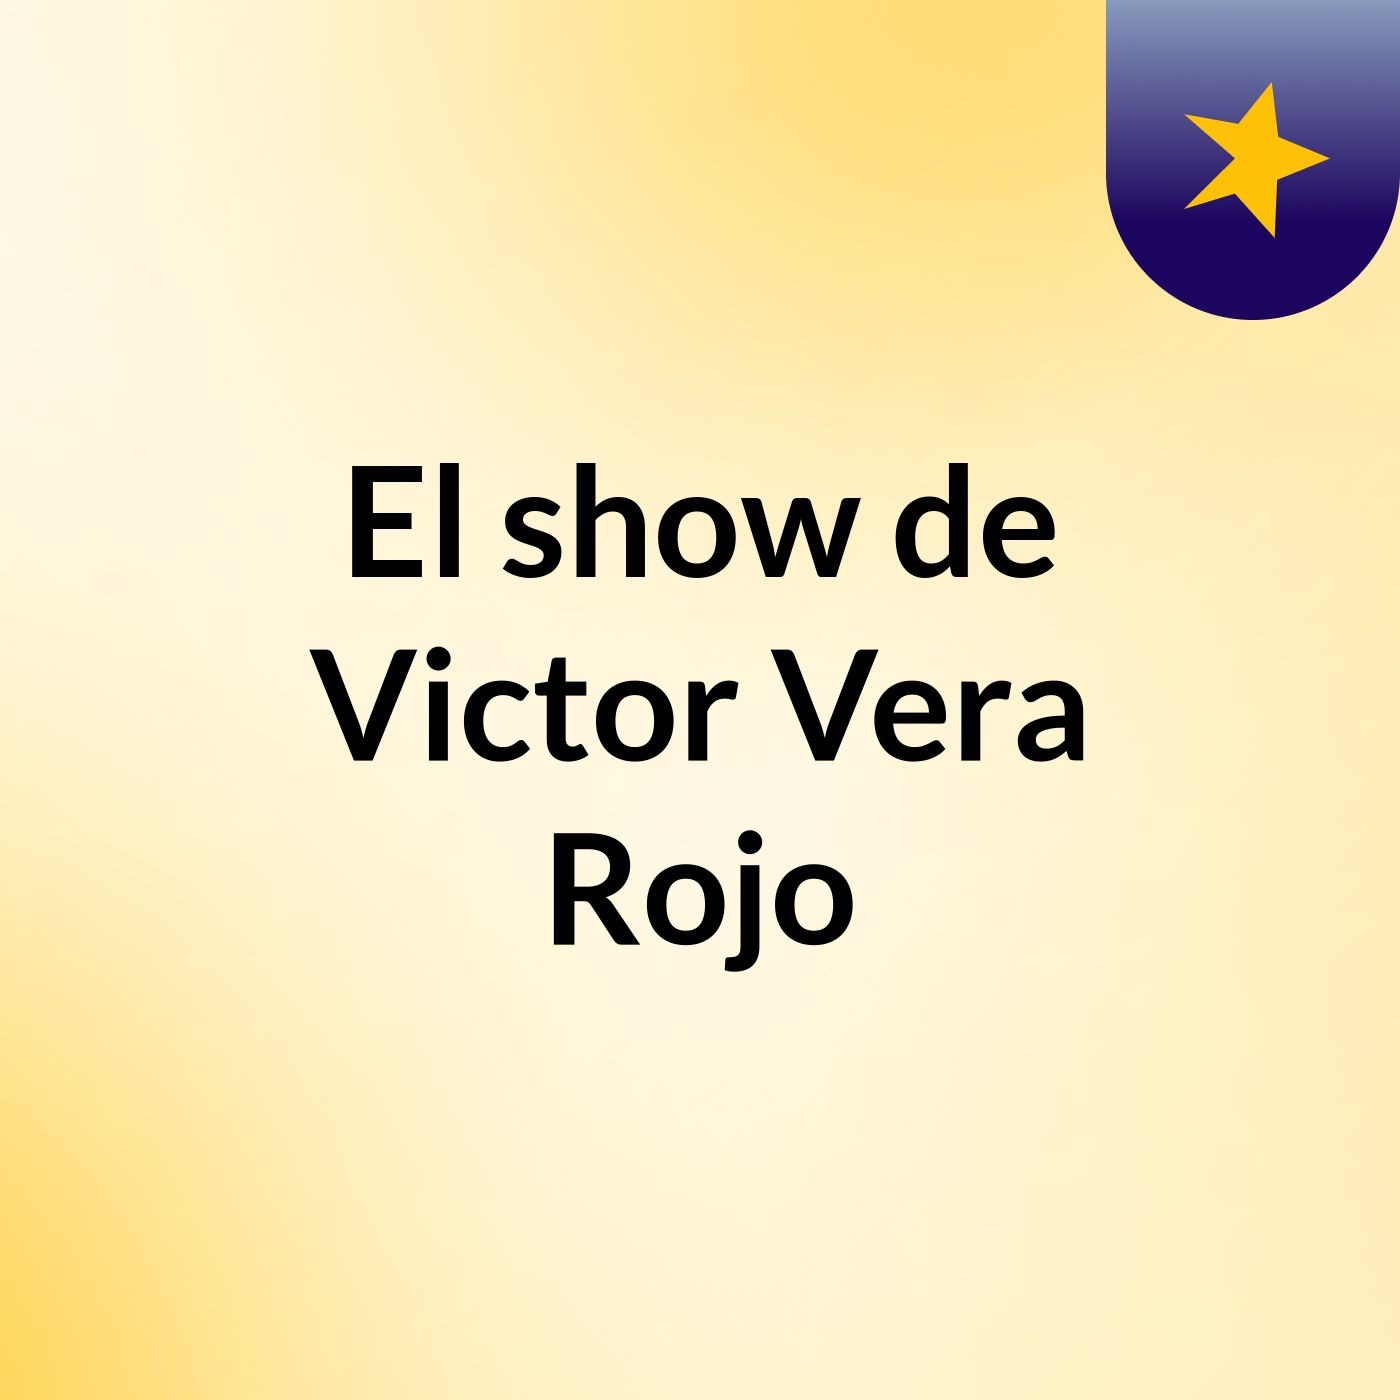 El show de Victor Vera Rojo